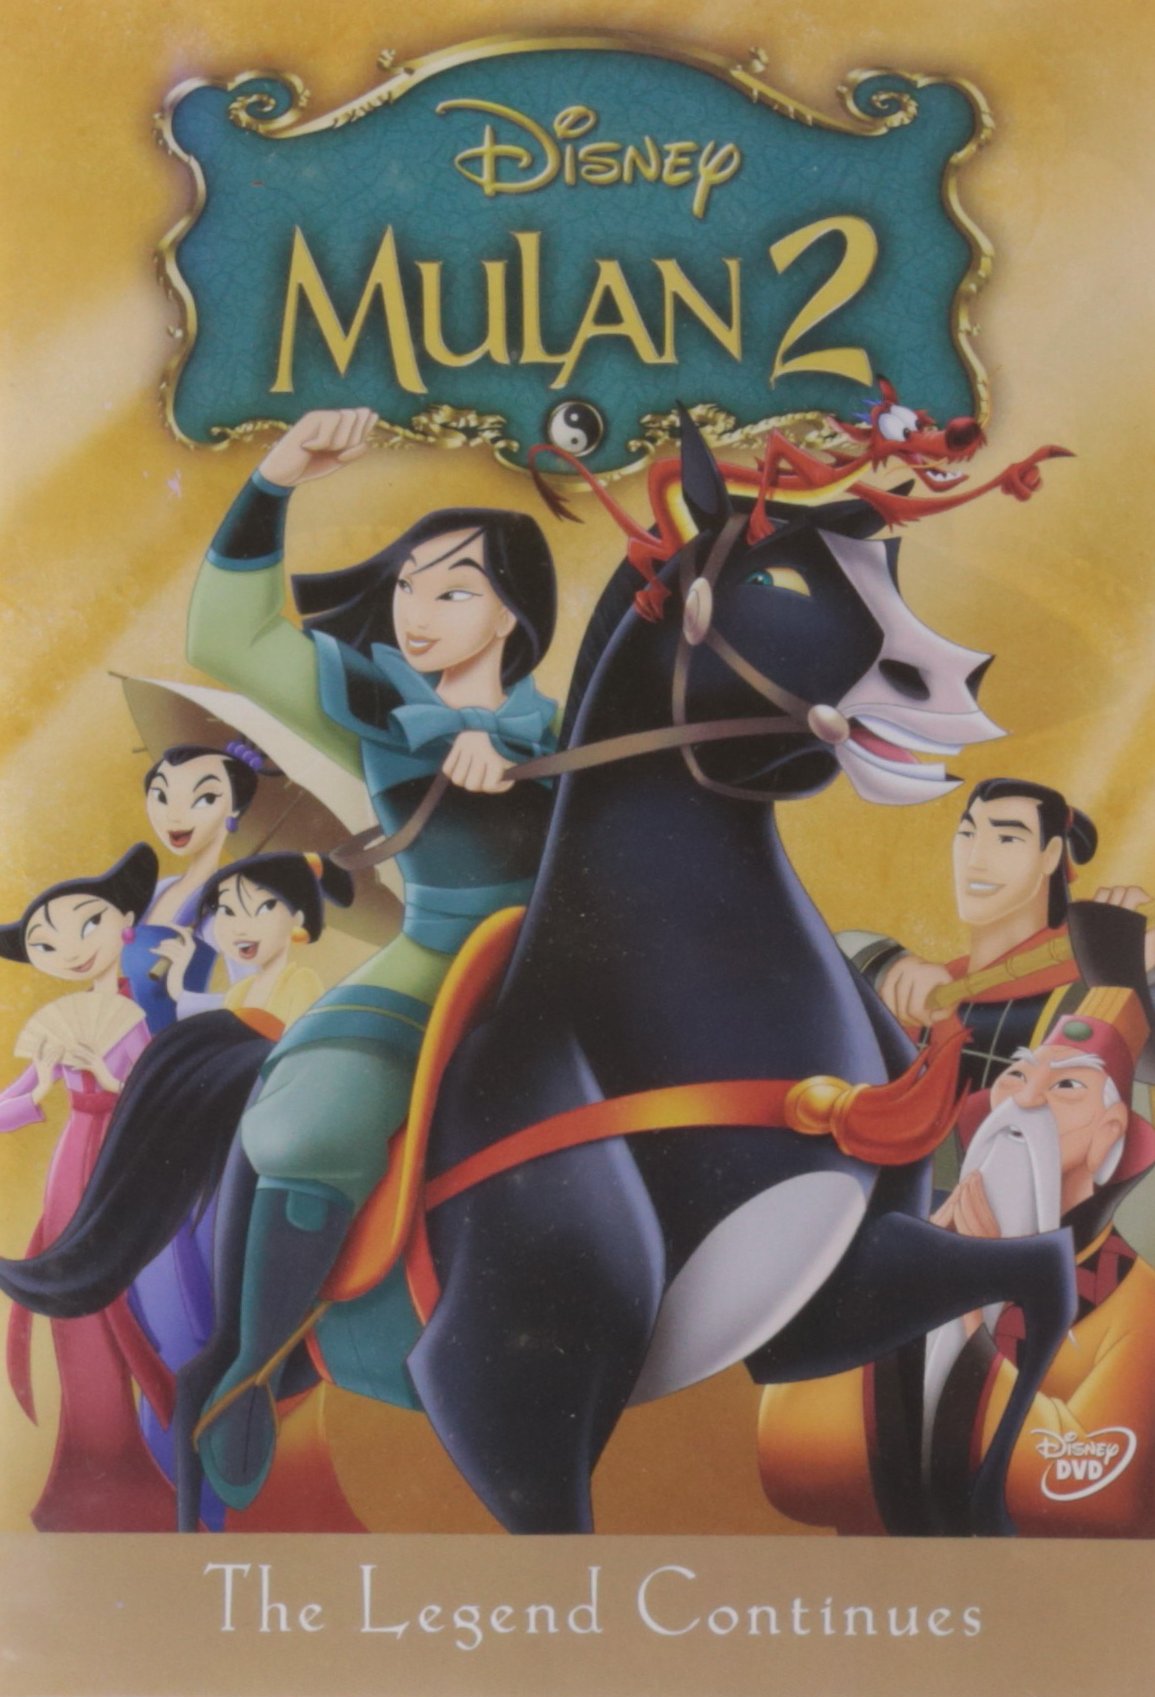 mulan-2-dvd-movie-purchase-or-watch-online